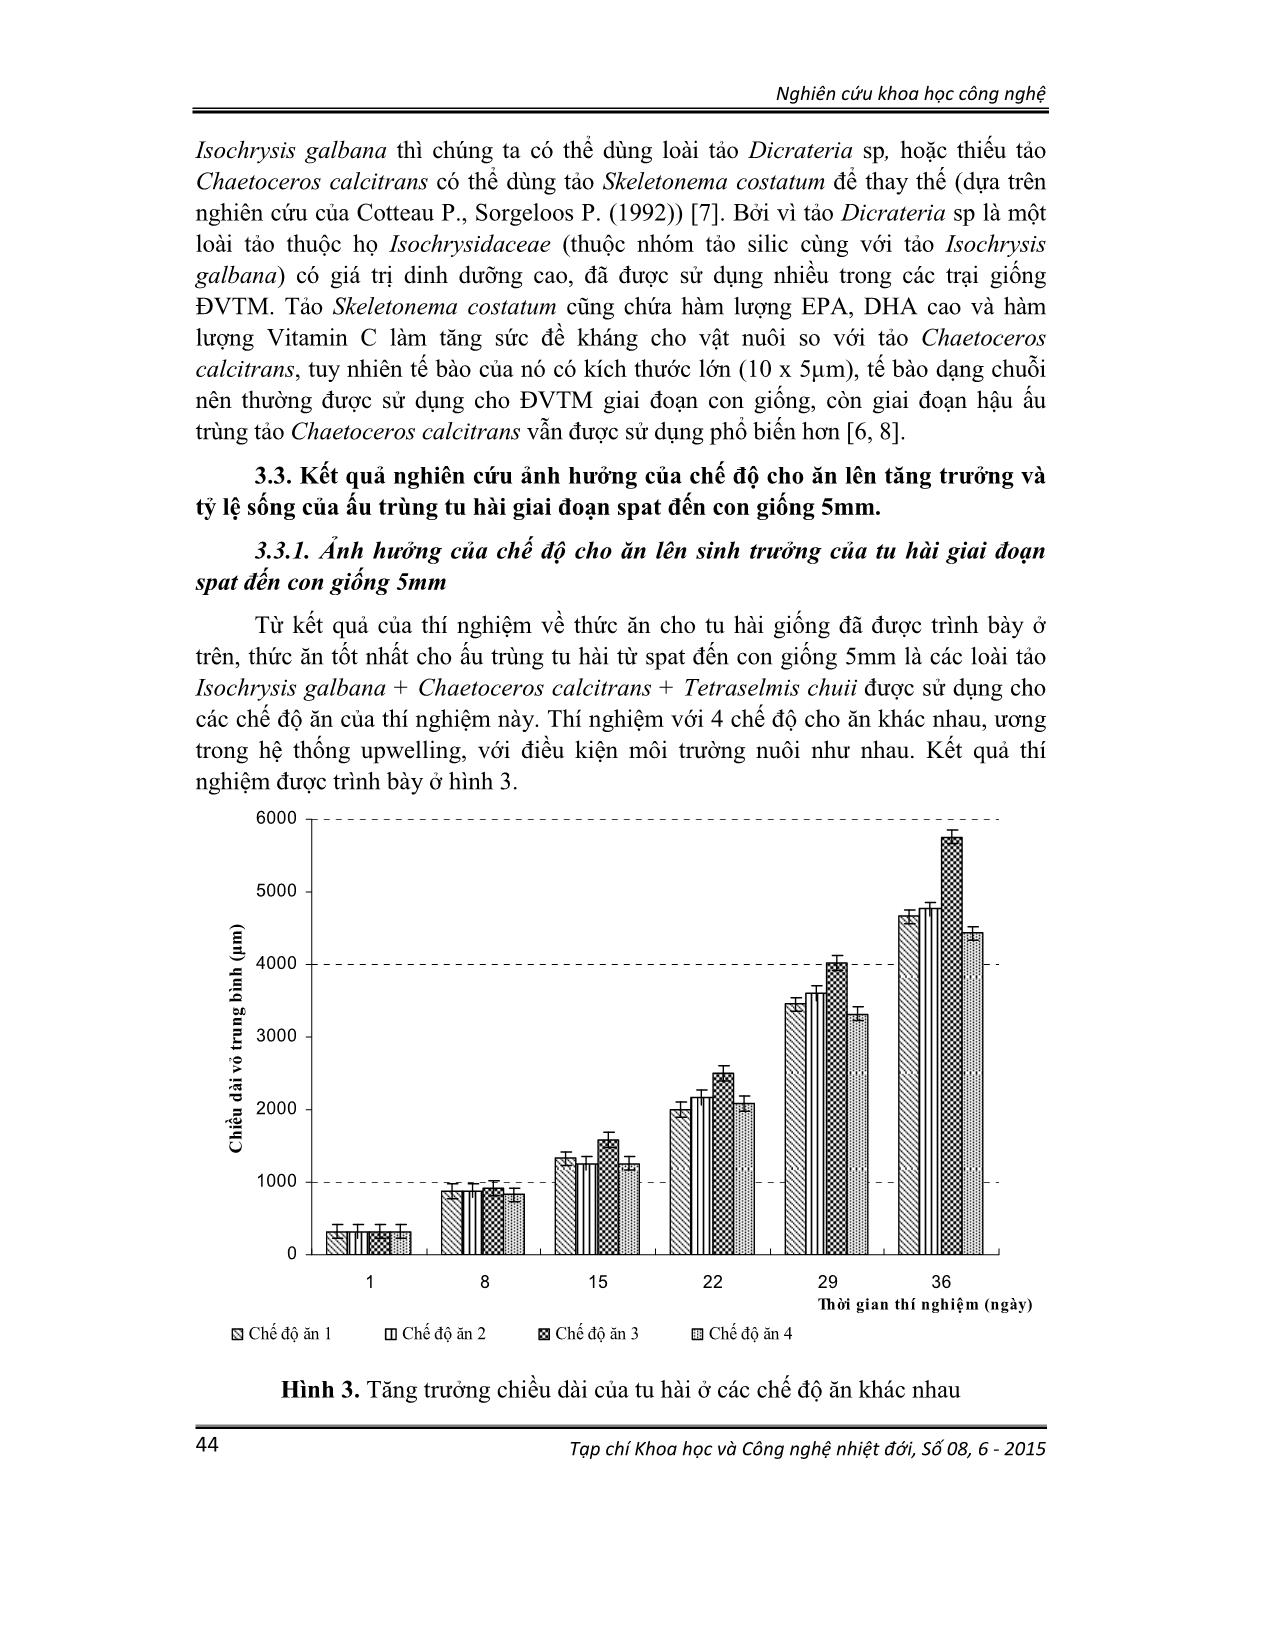 Ảnh hưởng của thức ăn, chế độ cho ăn lên sinh trưởng và tỷ lệ sống của tu hài (lutraria rhynchaena jonas, 1844) giai đoạn xuống đáy đến kích cỡ 5mm trang 7